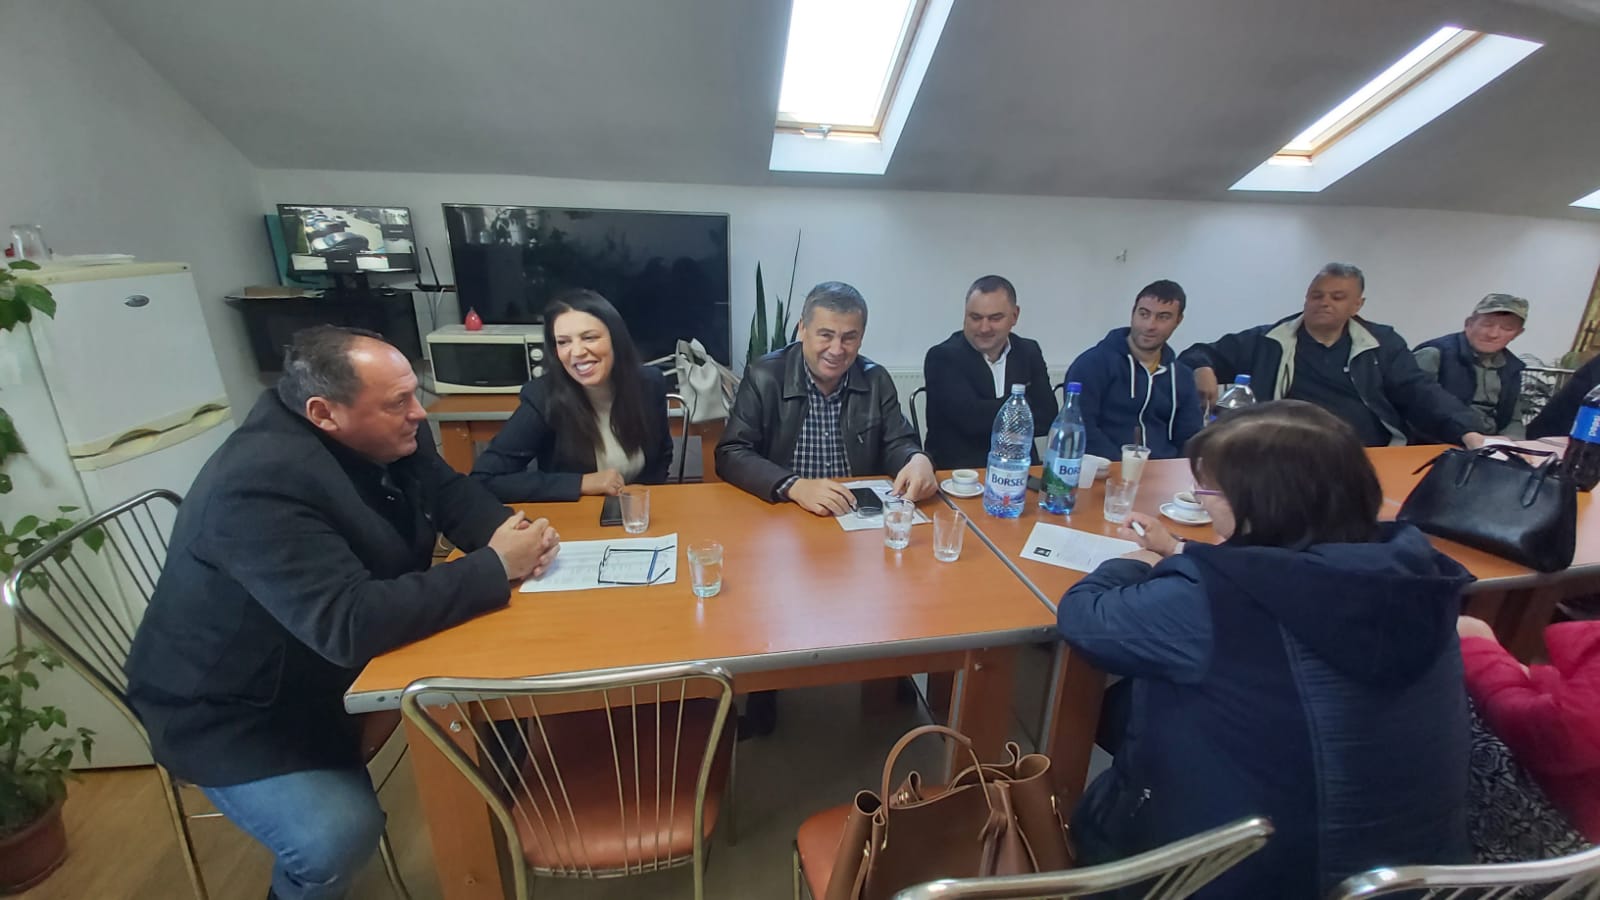 Senatorul Claudia Mihaela Banu s-a întâlnit în localitatea Stroești cu administrația liberală pentru a discuta despre proiectele în proces de derulare la nivel local